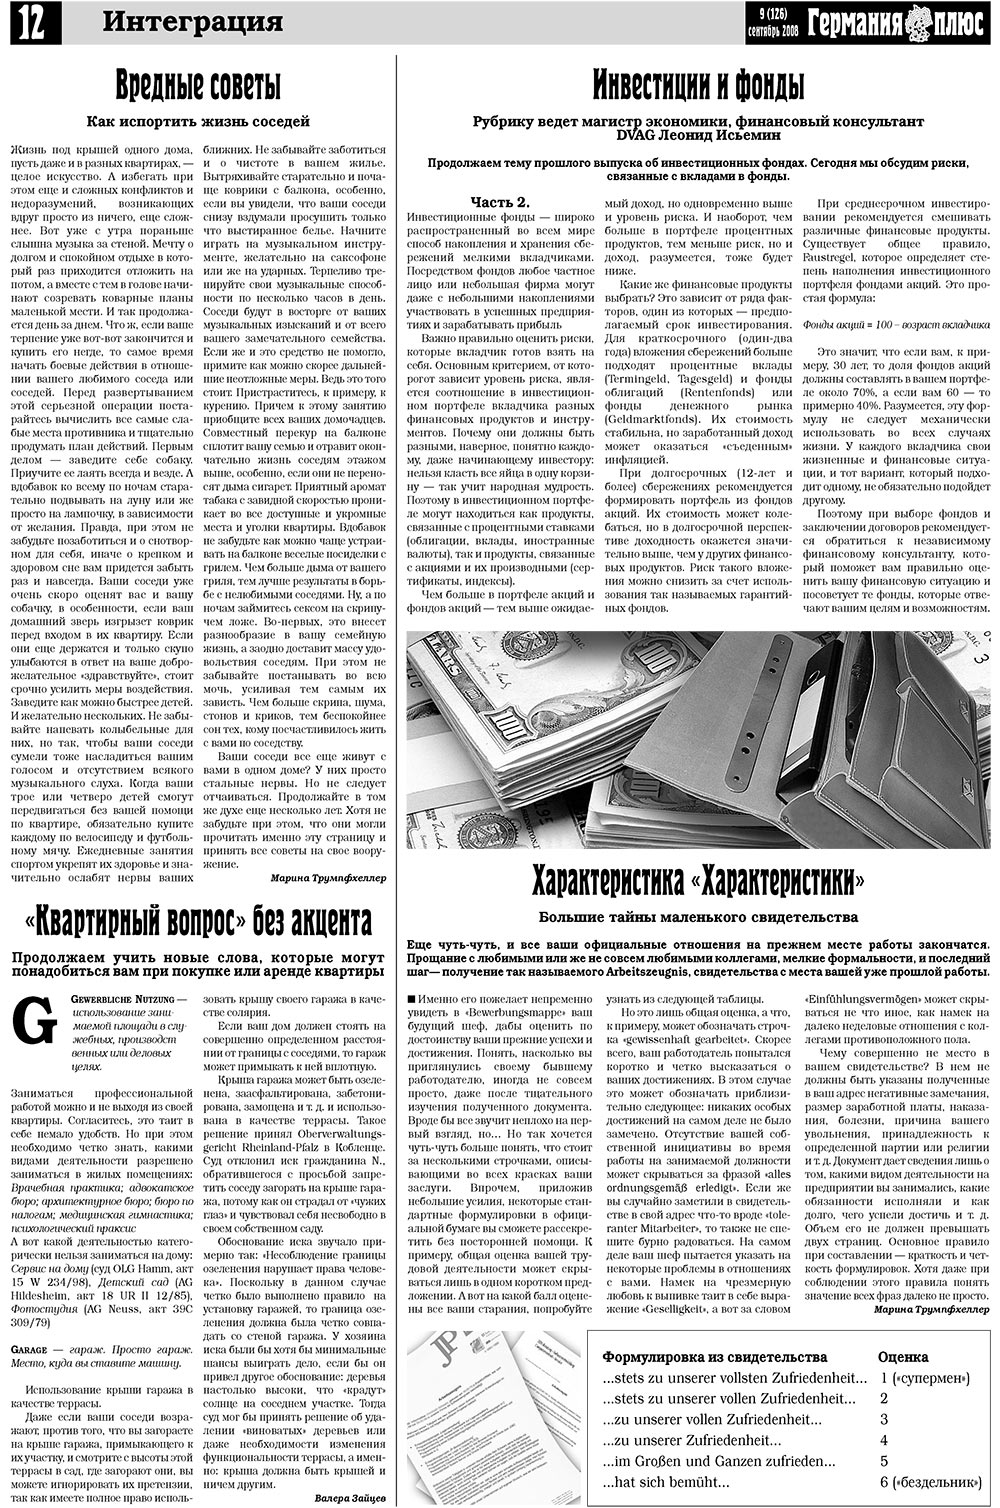 Германия плюс (газета). 2008 год, номер 9, стр. 16